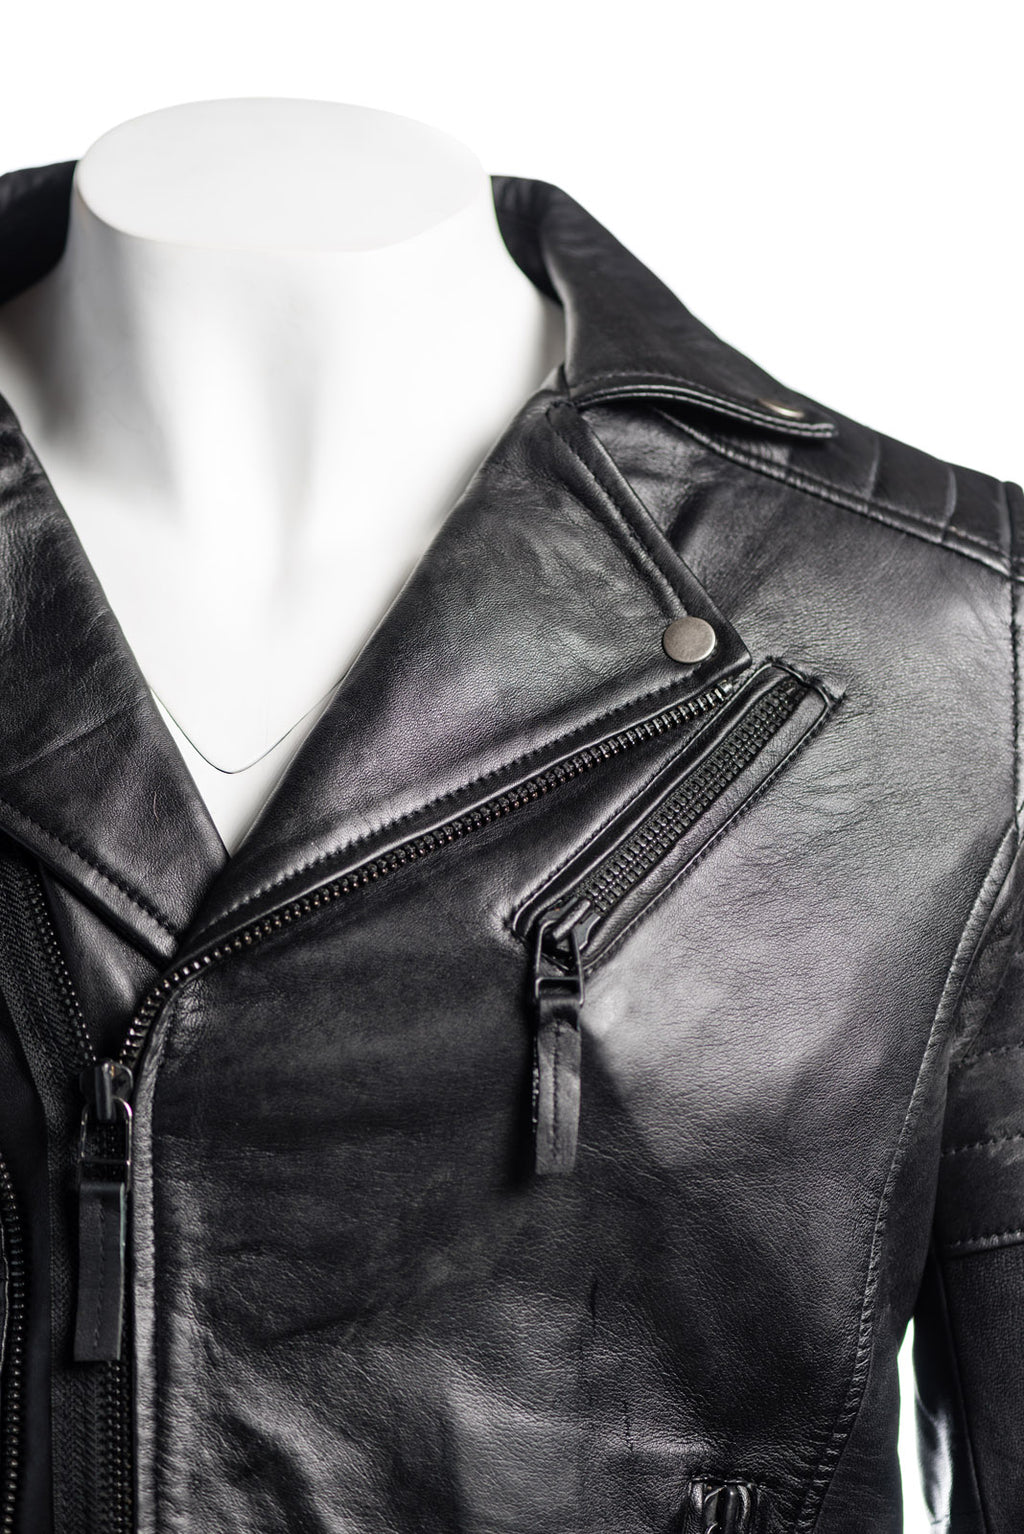 Men's Black Vintage Look Biker Style Leather Jacket: Placido